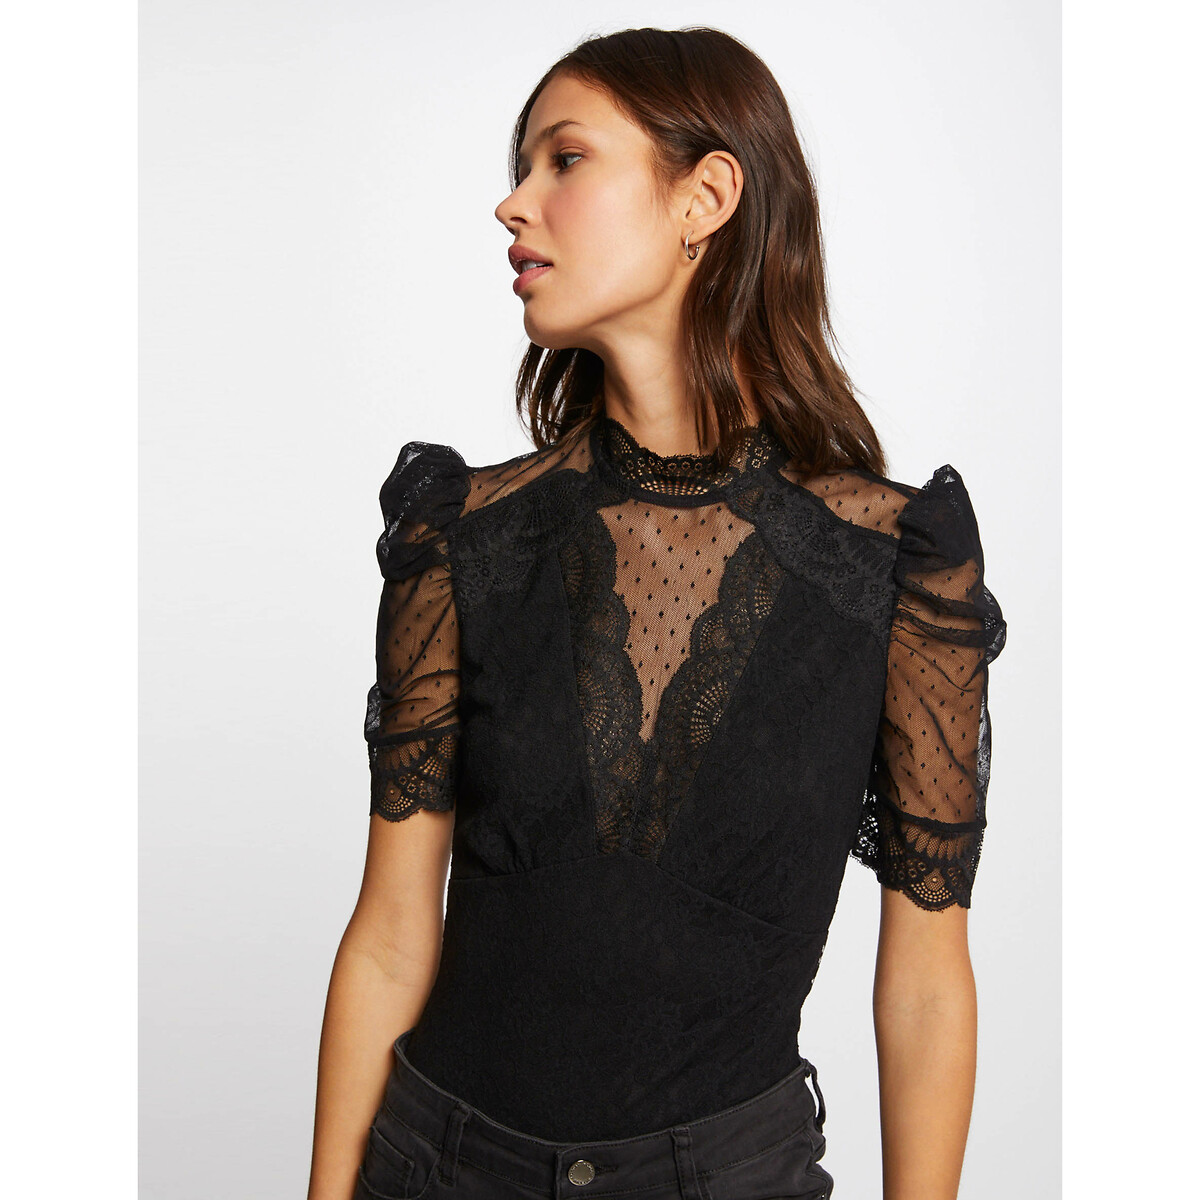 Lace short sleeve bodysuit , black, Morgan | La Redoute